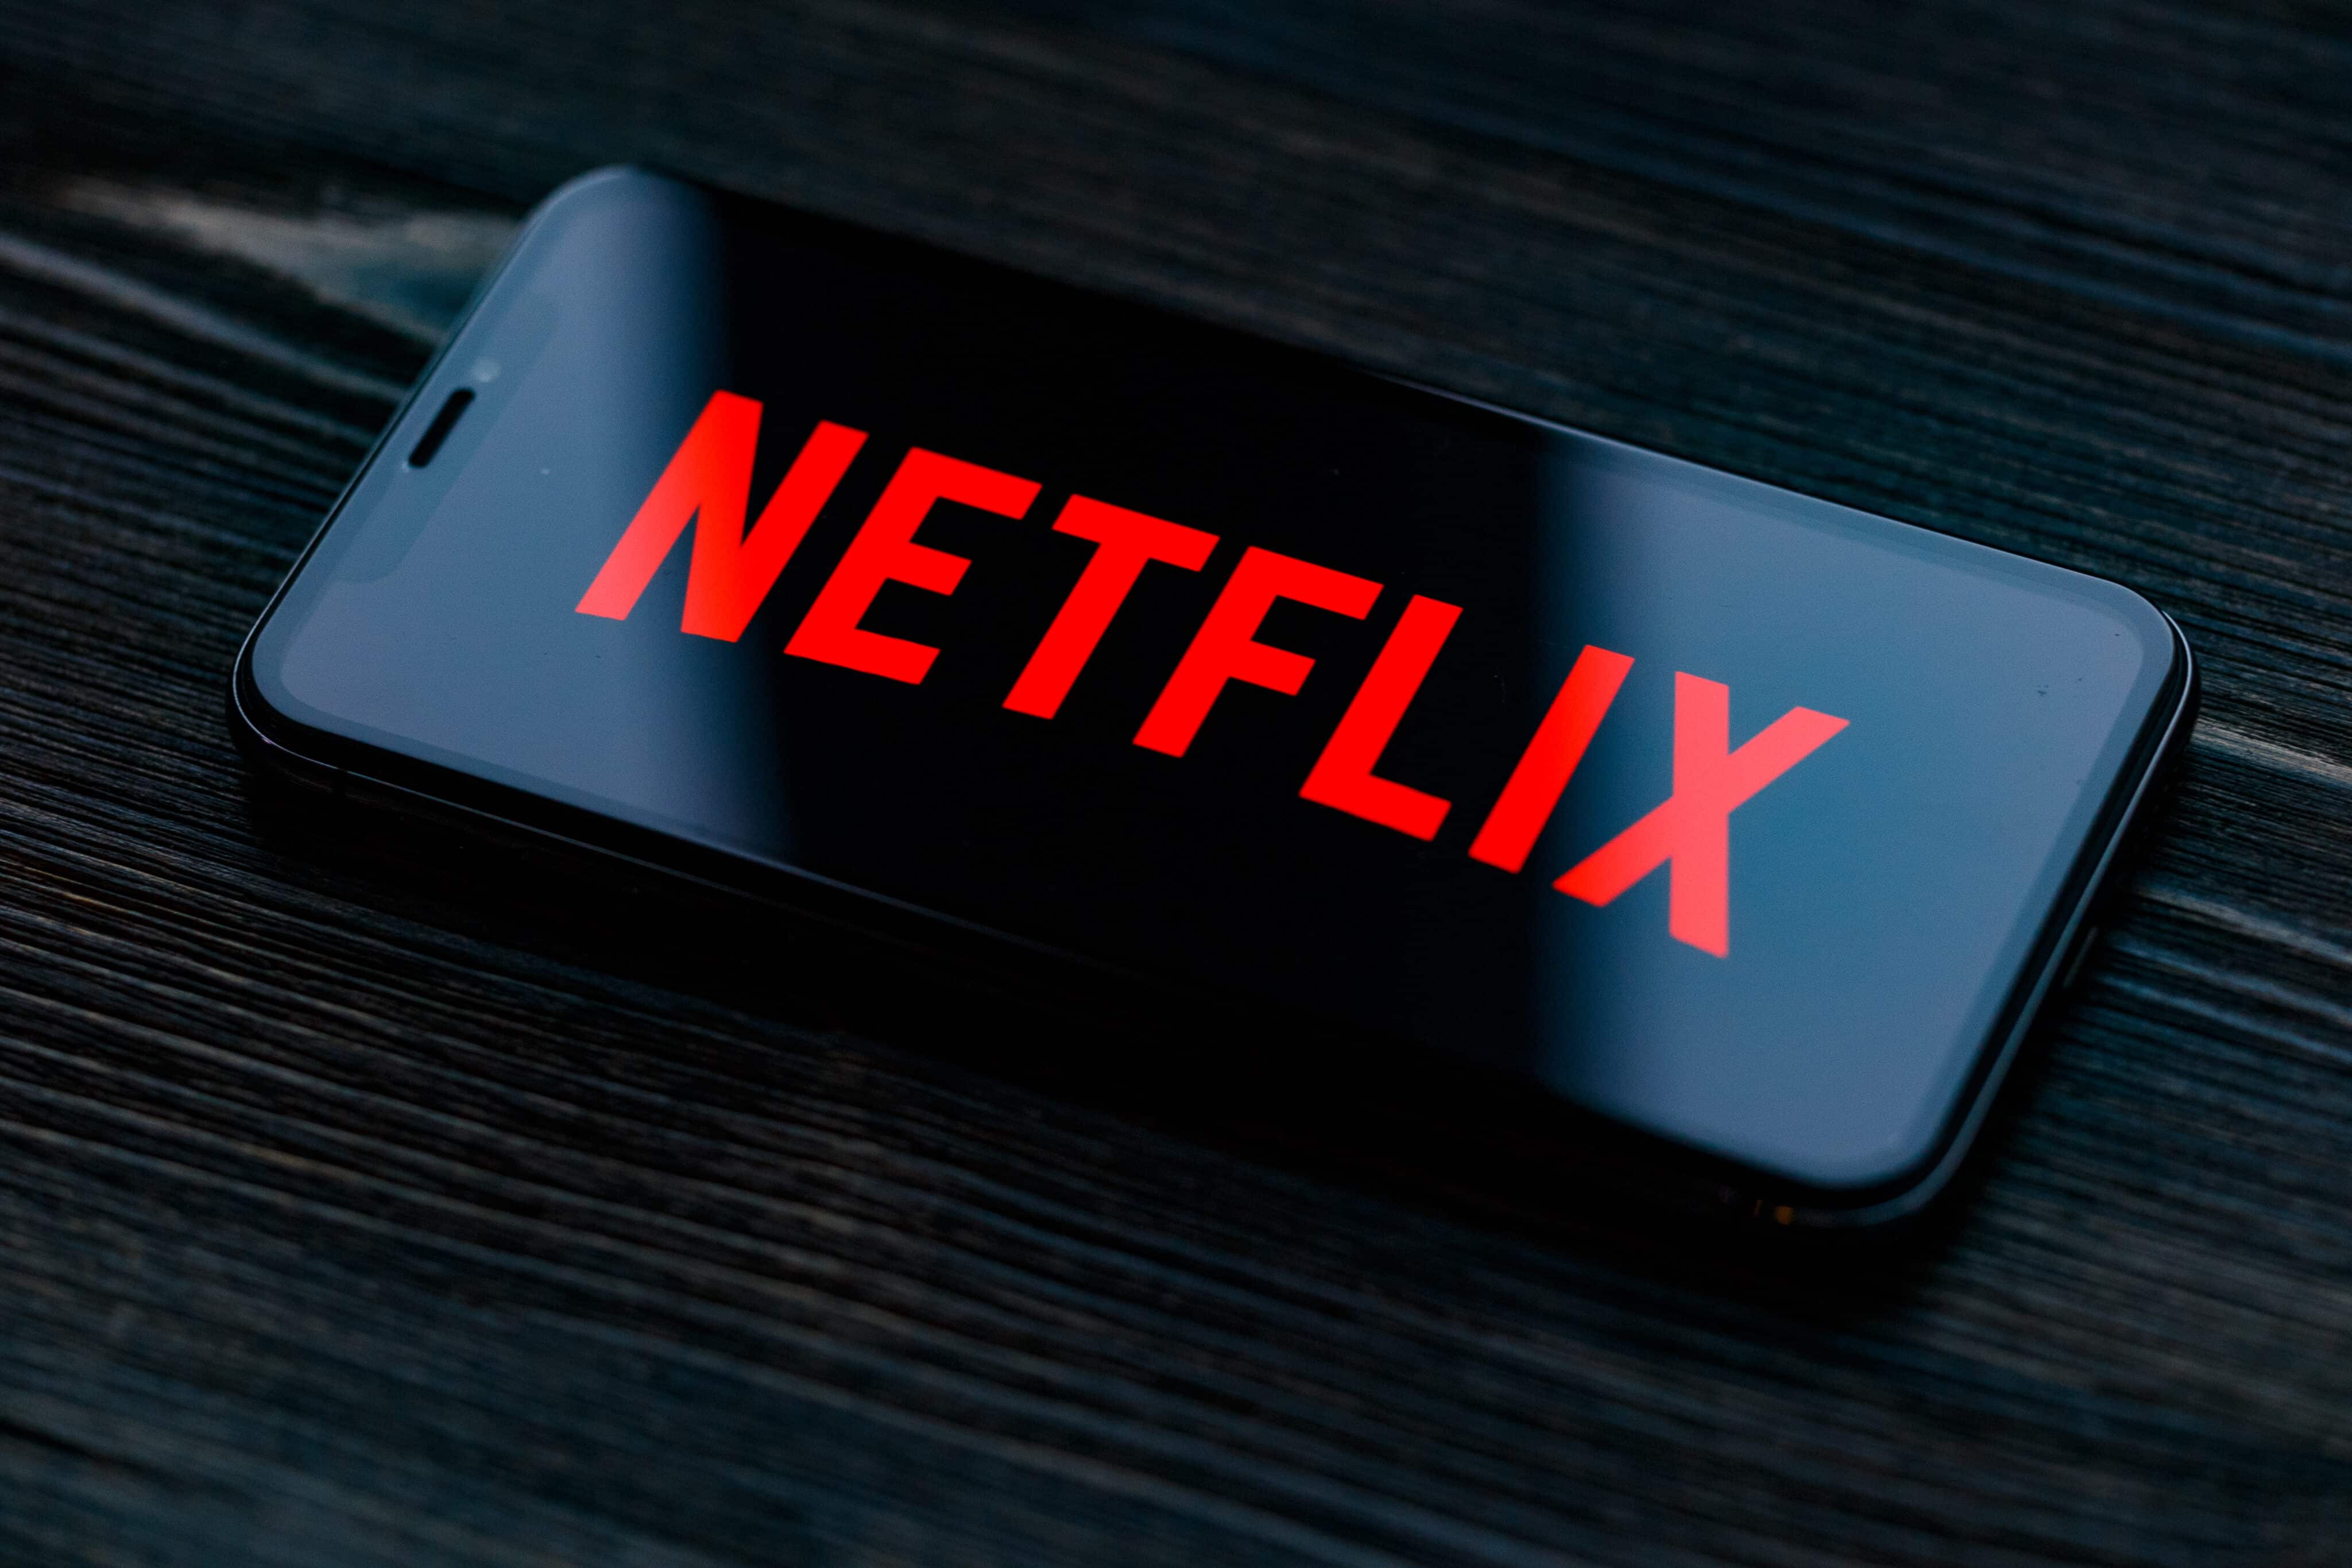 Procons notificam Netflix devido à cobrança por assinante extra  [atualizado 4x] - MacMagazine